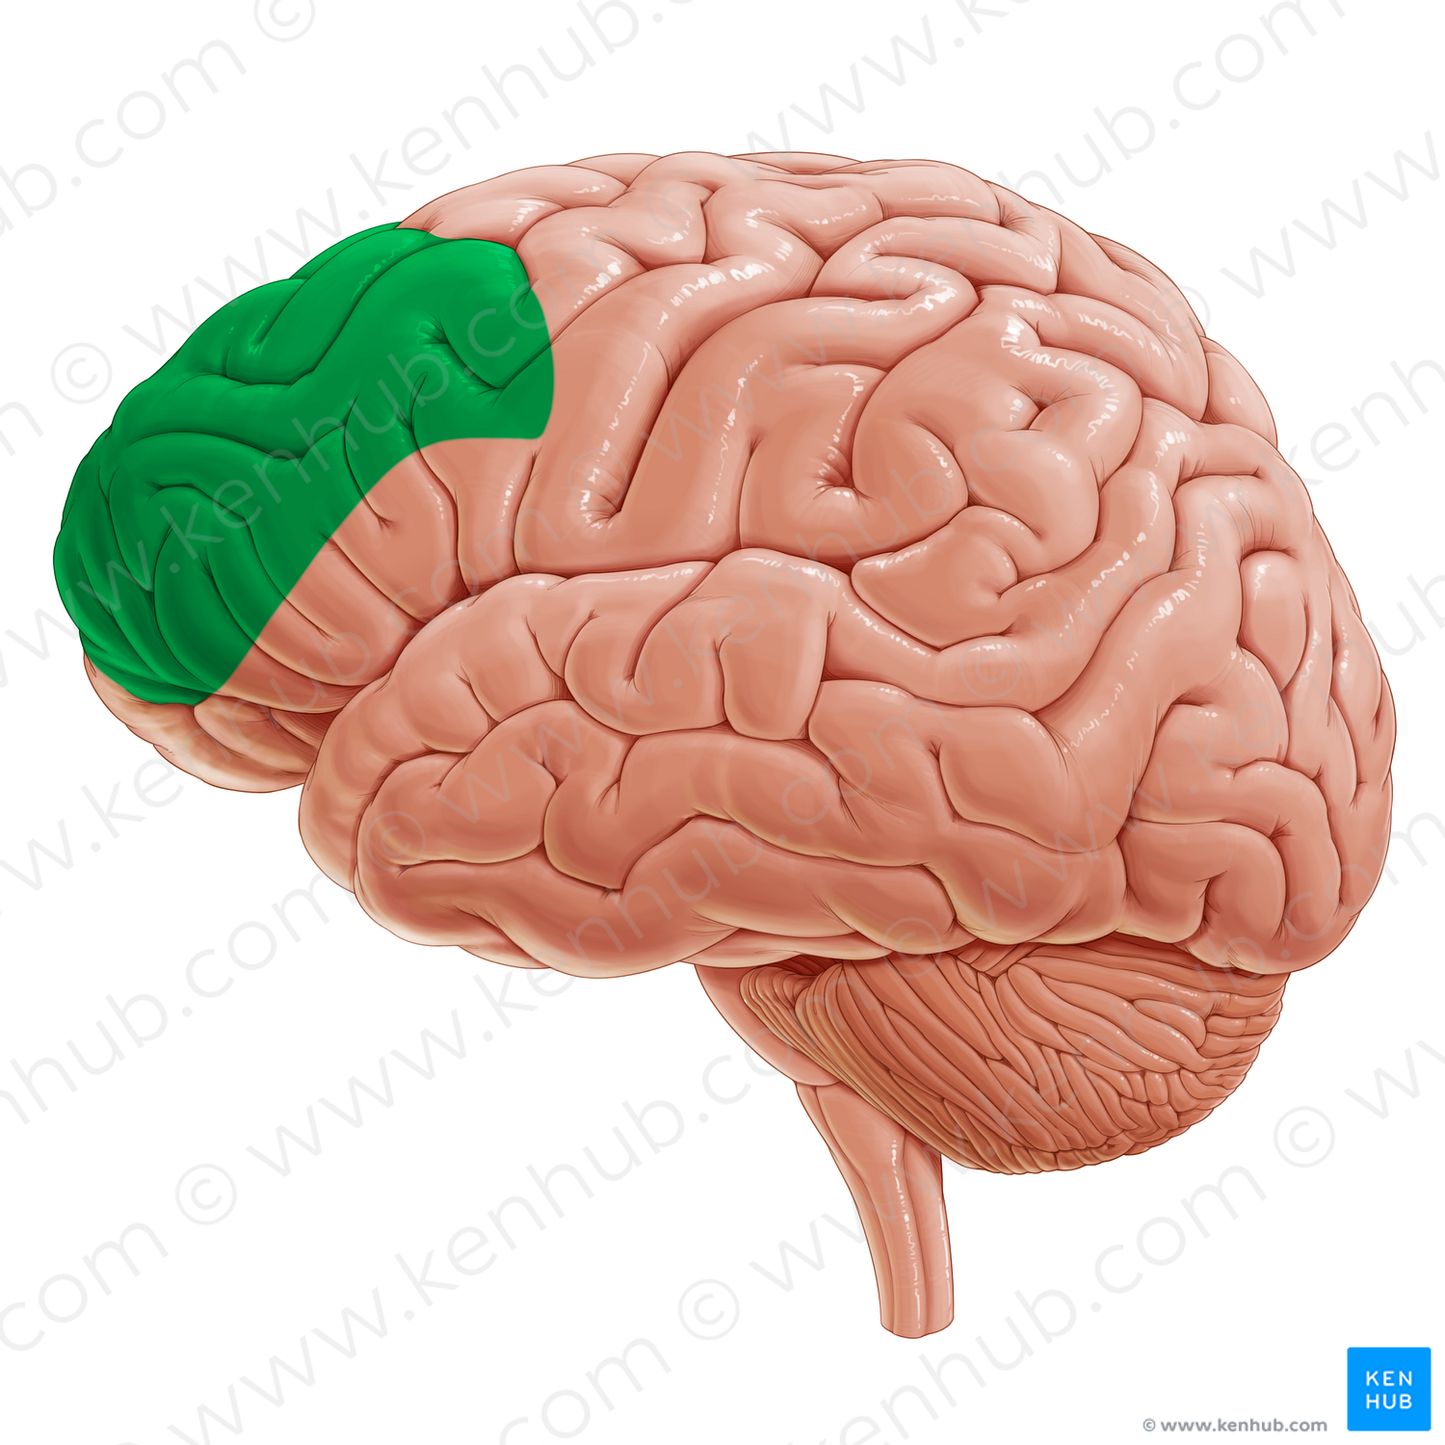 Dorsolateral prefrontal cortex (#20330)